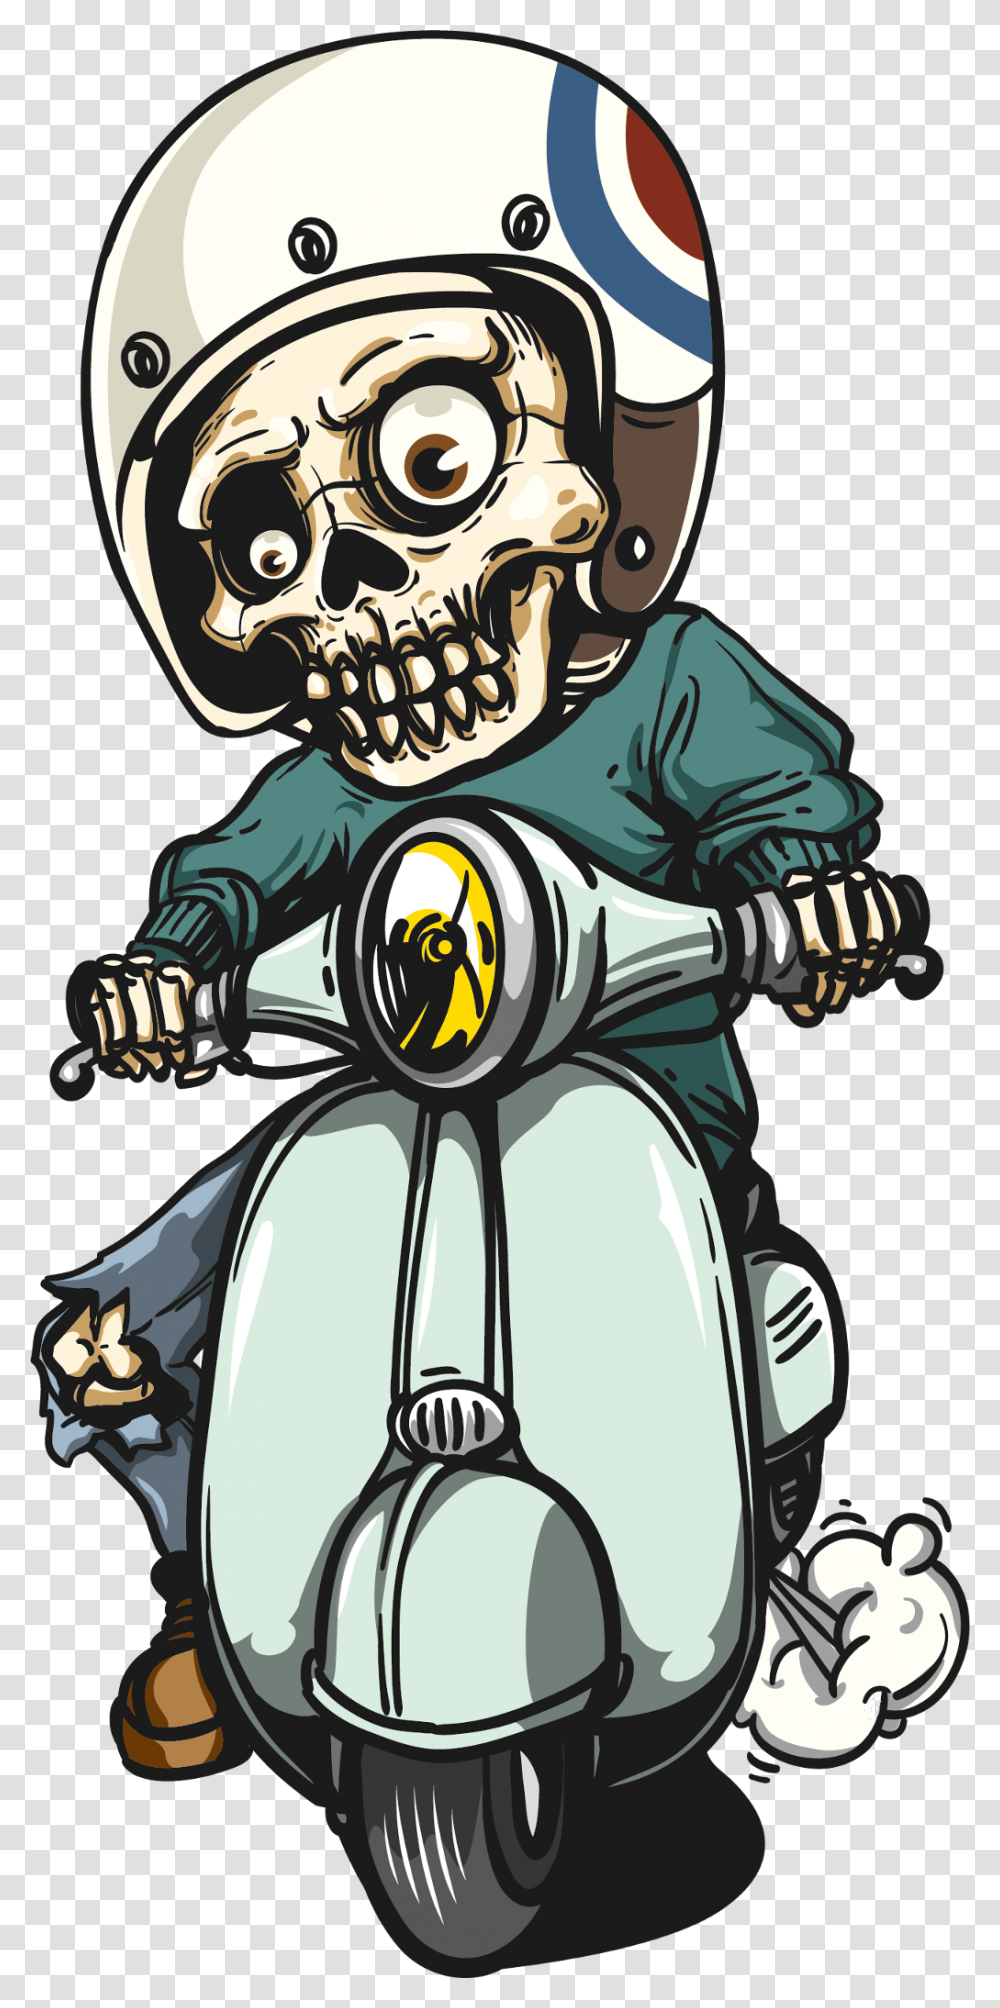 Cartoon Skeleton Vespa Skull, Vehicle, Transportation, Scooter, Motorcycle Transparent Png